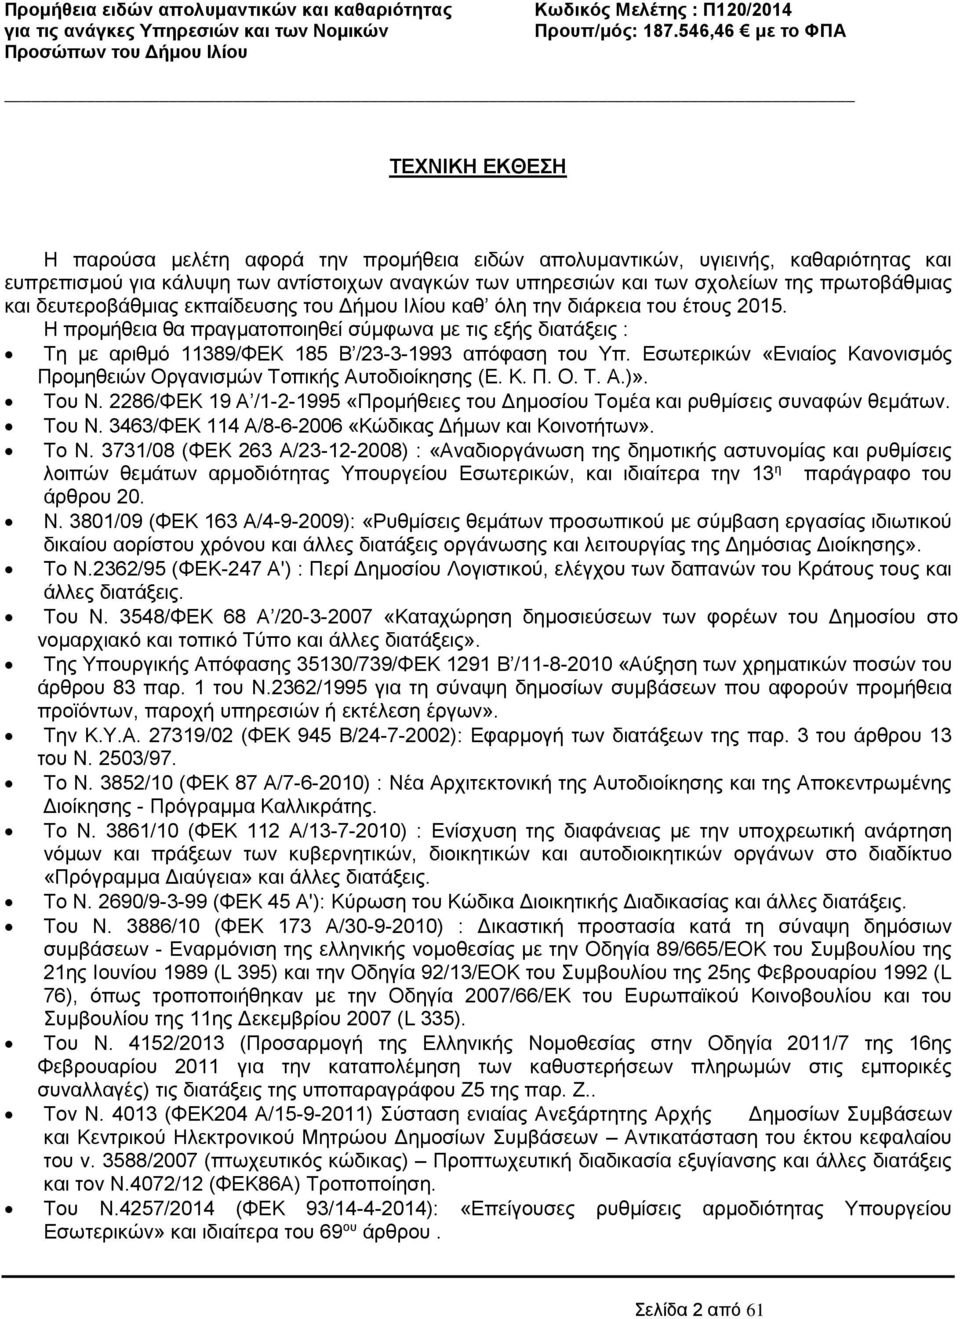 Εσωτερικών «Ενιαίος Κανονισμός Προμηθειών Οργανισμών Τοπικής Αυτοδιοίκησης (Ε. Κ. Π. Ο. Τ. Α.)». Του Ν. 2286/ΦΕΚ 19 Α /1-2-1995 «Προμήθειες του Δημοσίου Τομέα και ρυθμίσεις συναφών θεμάτων. Του Ν. 3463/ΦΕΚ 114 Α/8-6-2006 «Κώδικας Δήμων και Κοινοτήτων».